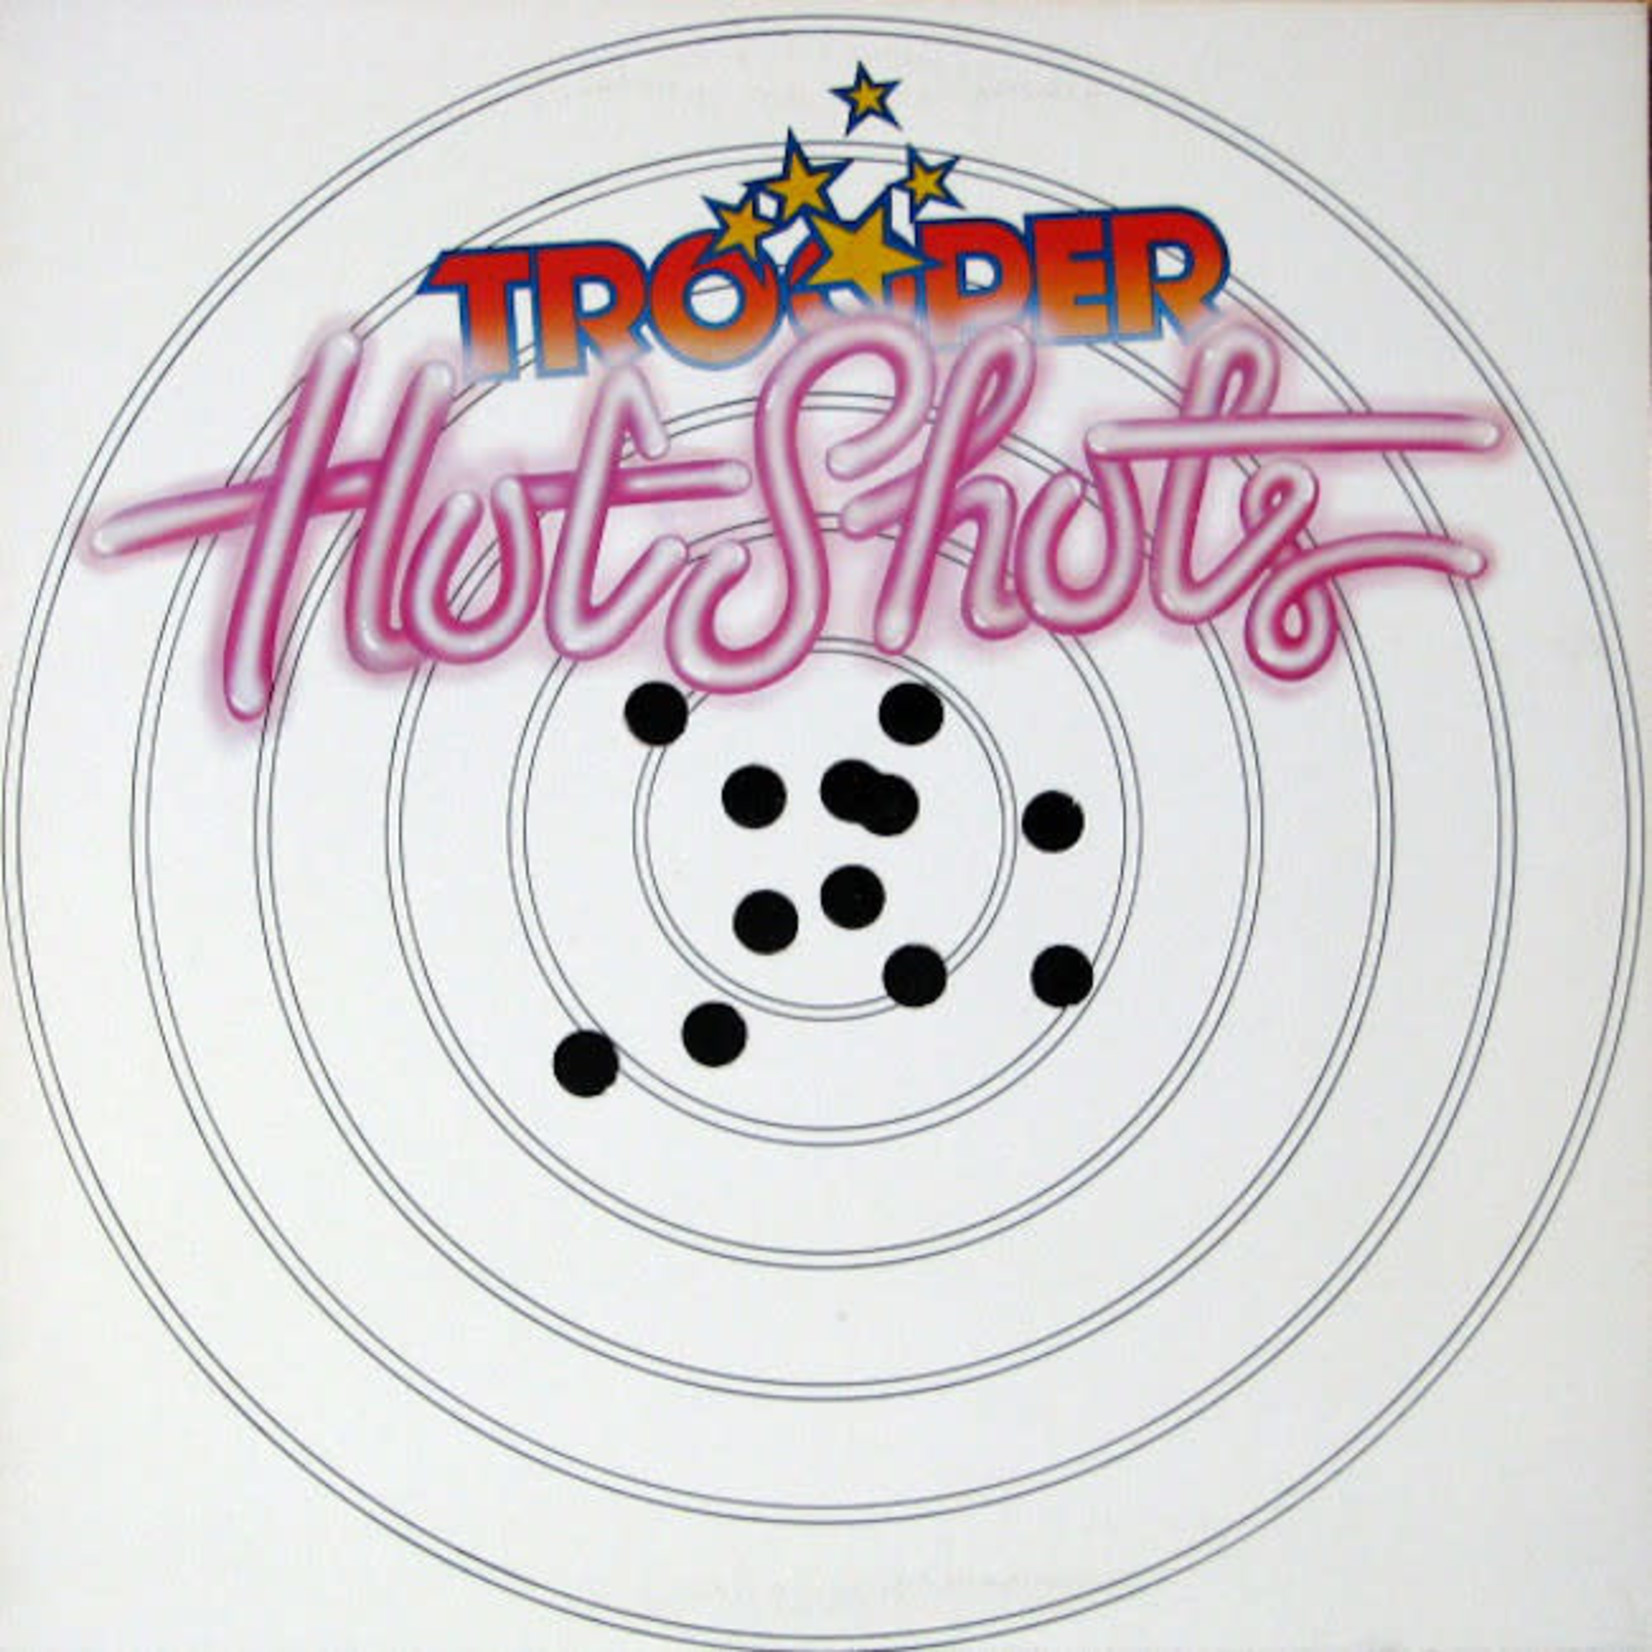 [Vintage] Trooper - Hot Shots